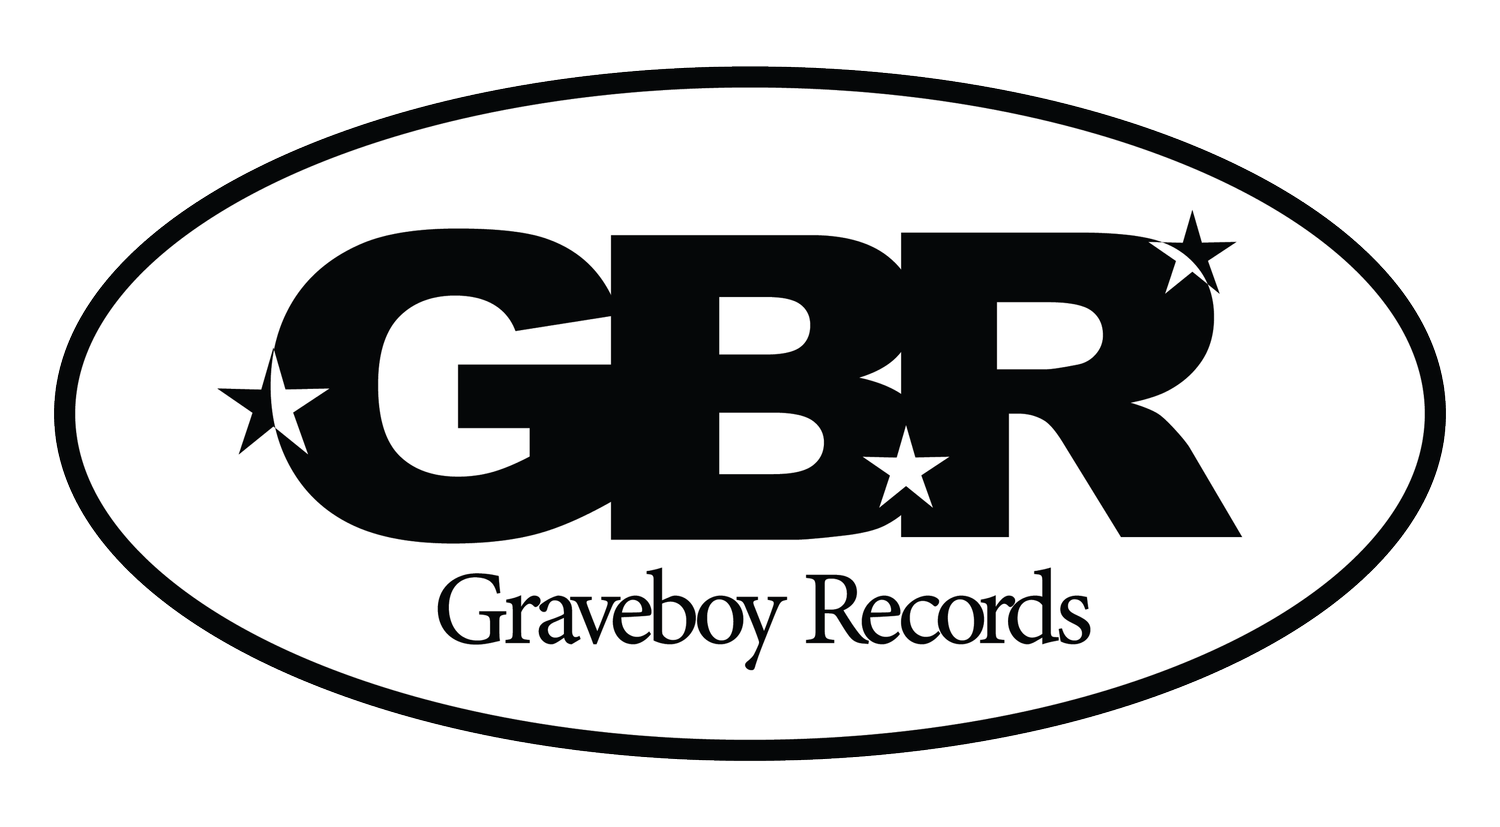  Graveboy Records